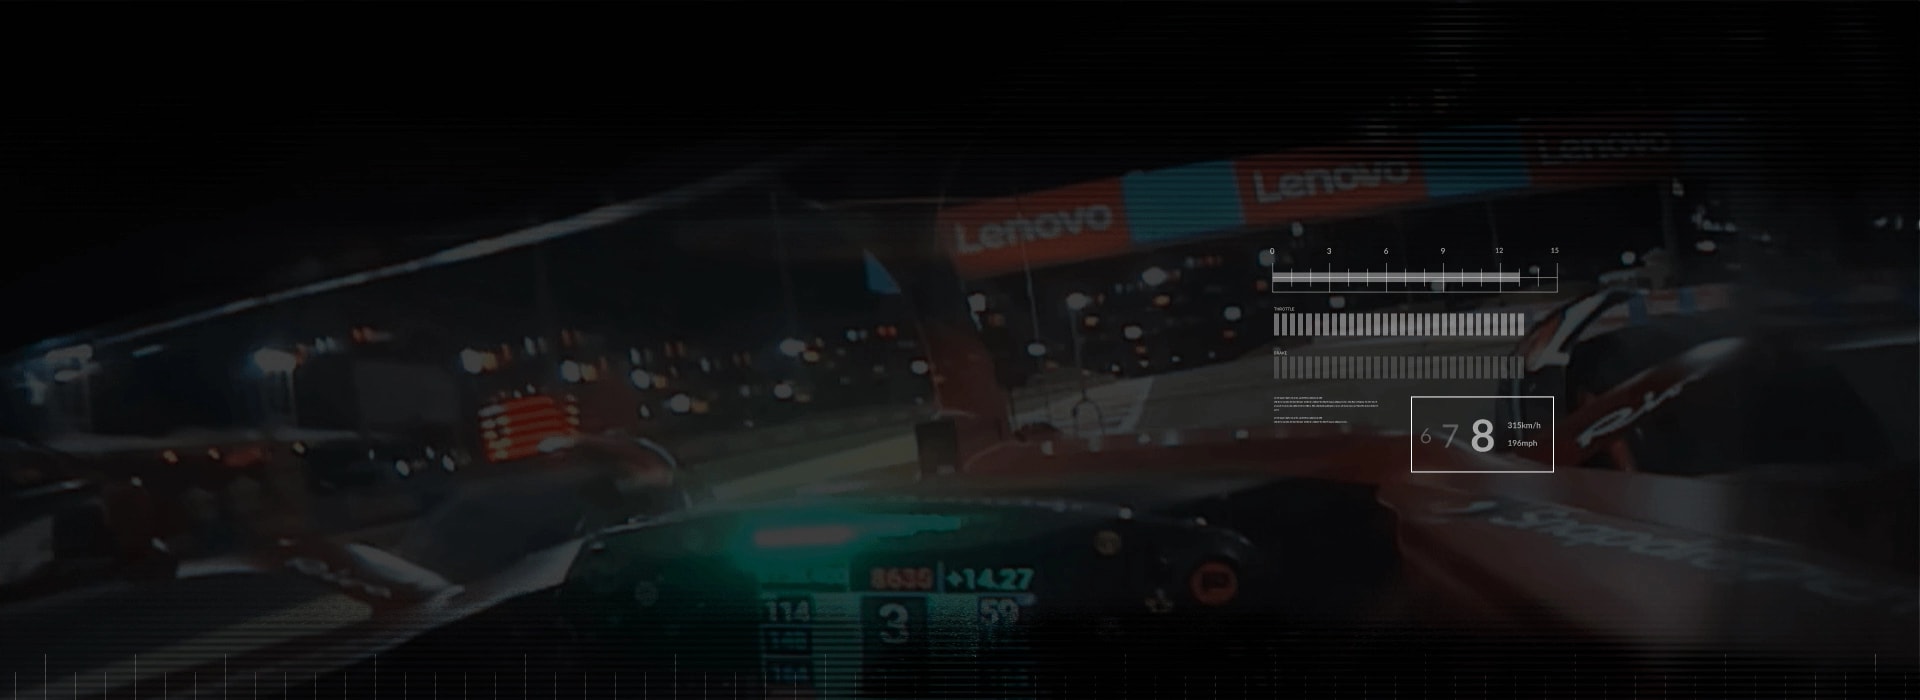 Belső perspektíva egy F1-es versenyzőről, aki a Lenovo bannerek mellett halad el a pályán